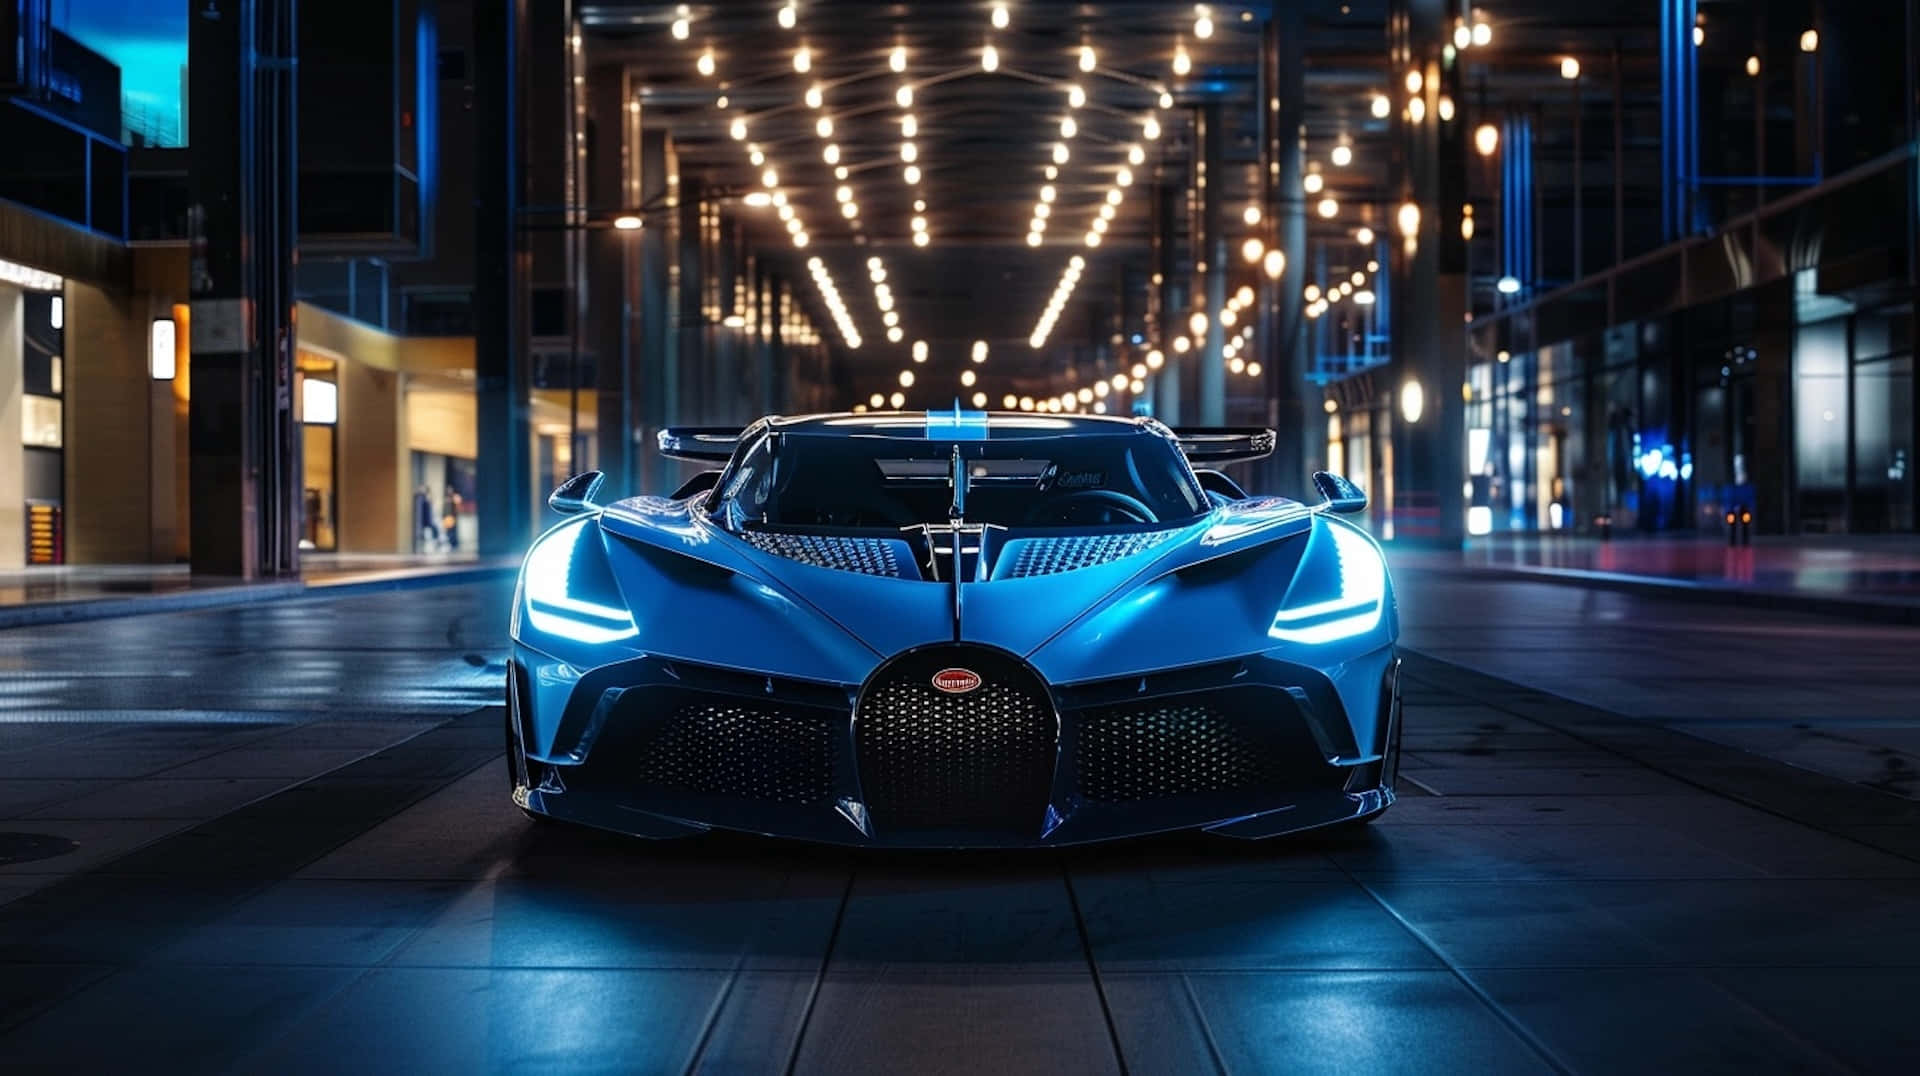 Bugatti Bolide Nighttime Cityscape Wallpaper